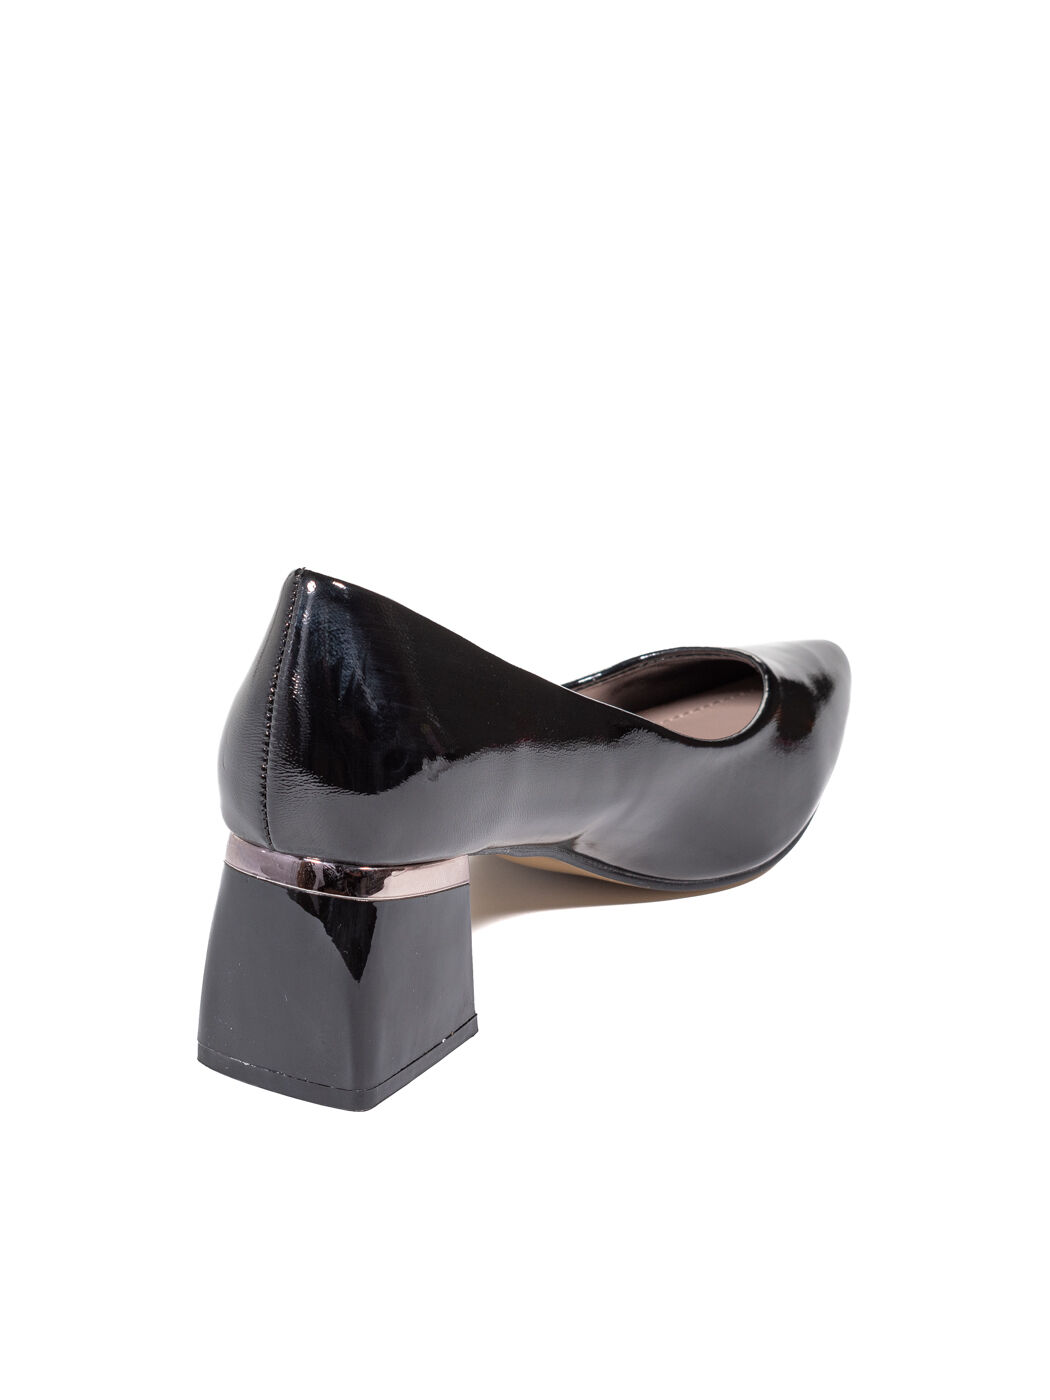 Туфли женские черные искусственный лак каблук устойчивый демисезон от производителя 1M вид 1